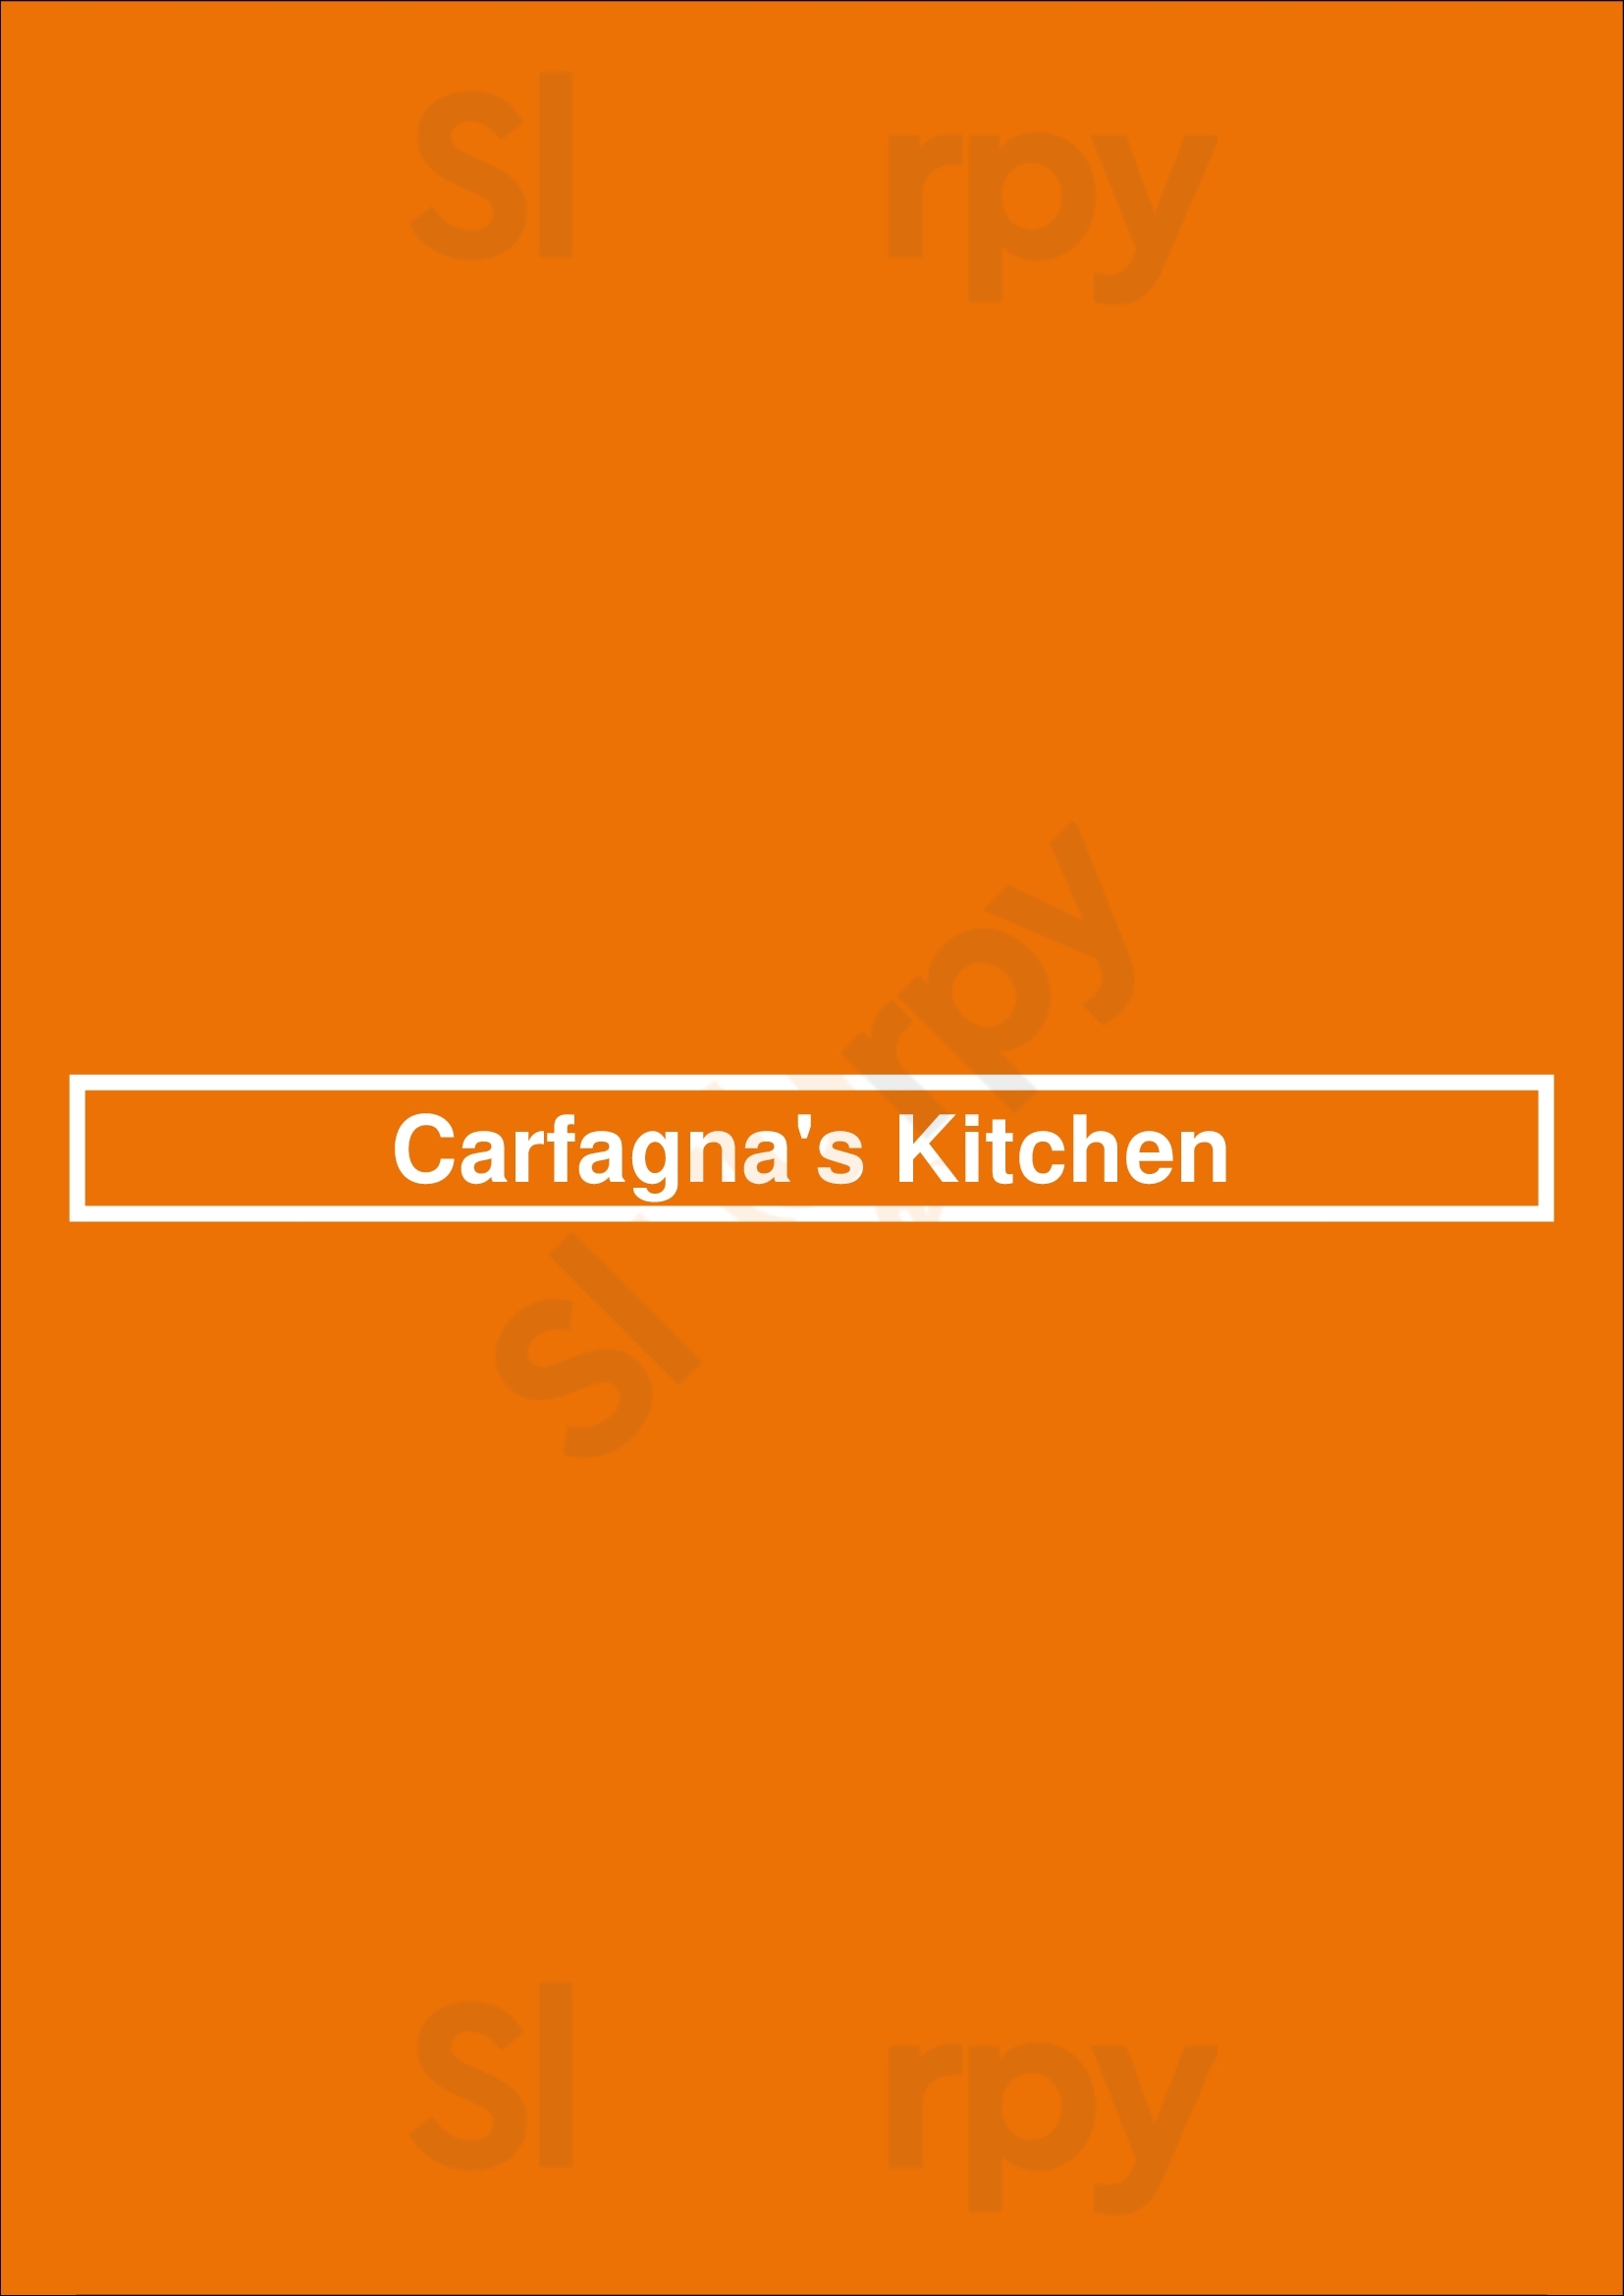 Carfagna's Kitchen Columbus Menu - 1